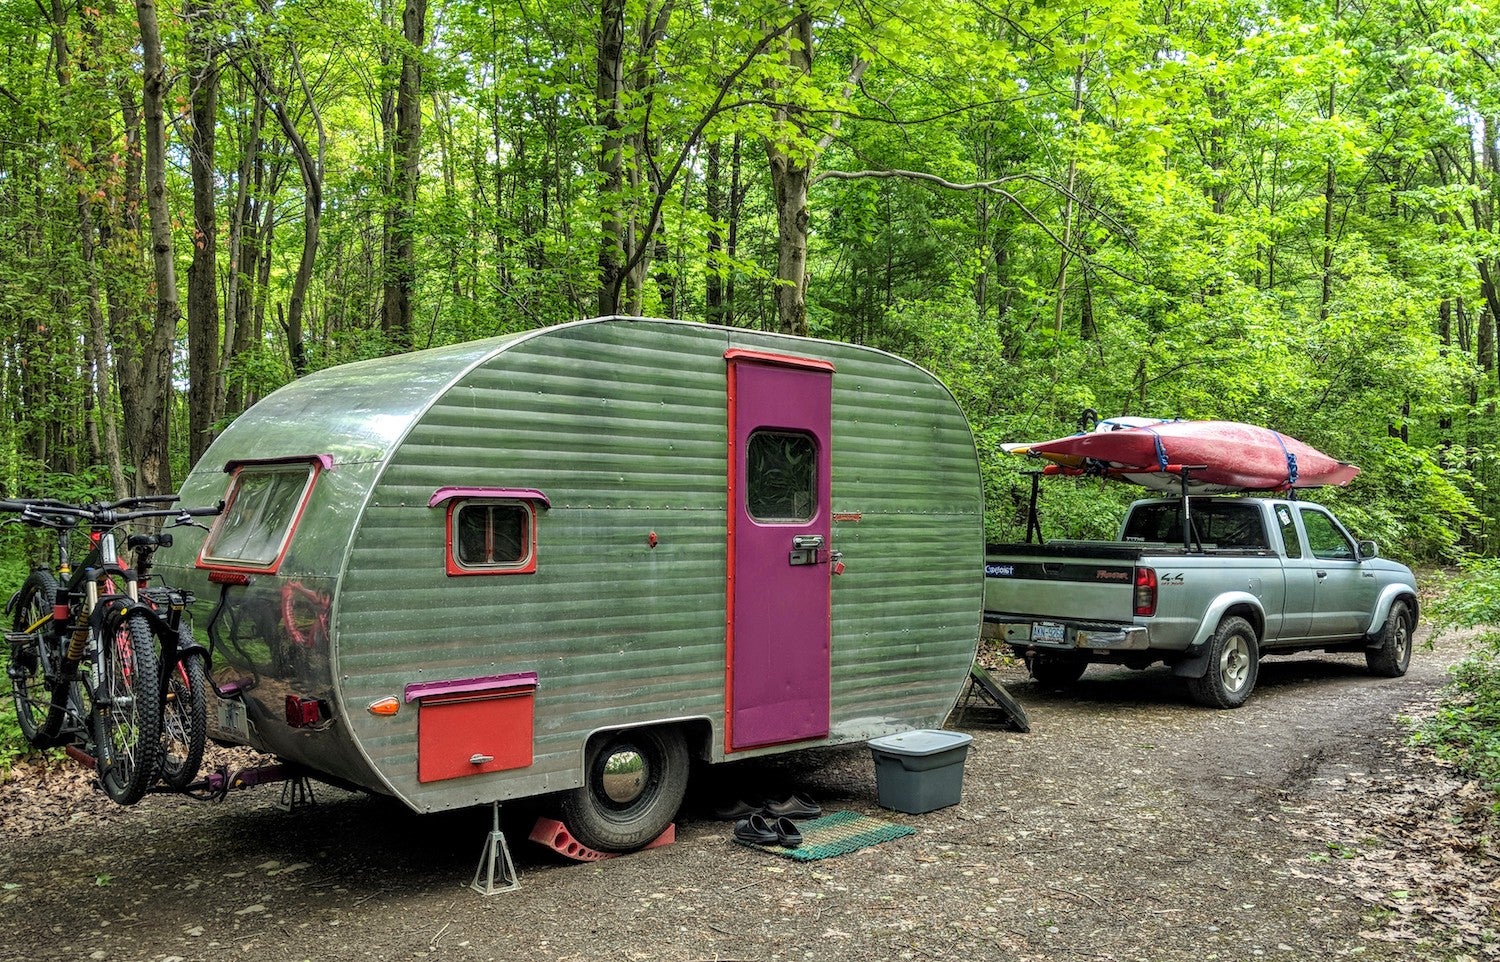 18 Camper Trailer Storage S For, Camper Outdoor Kitchen Storage Ideas